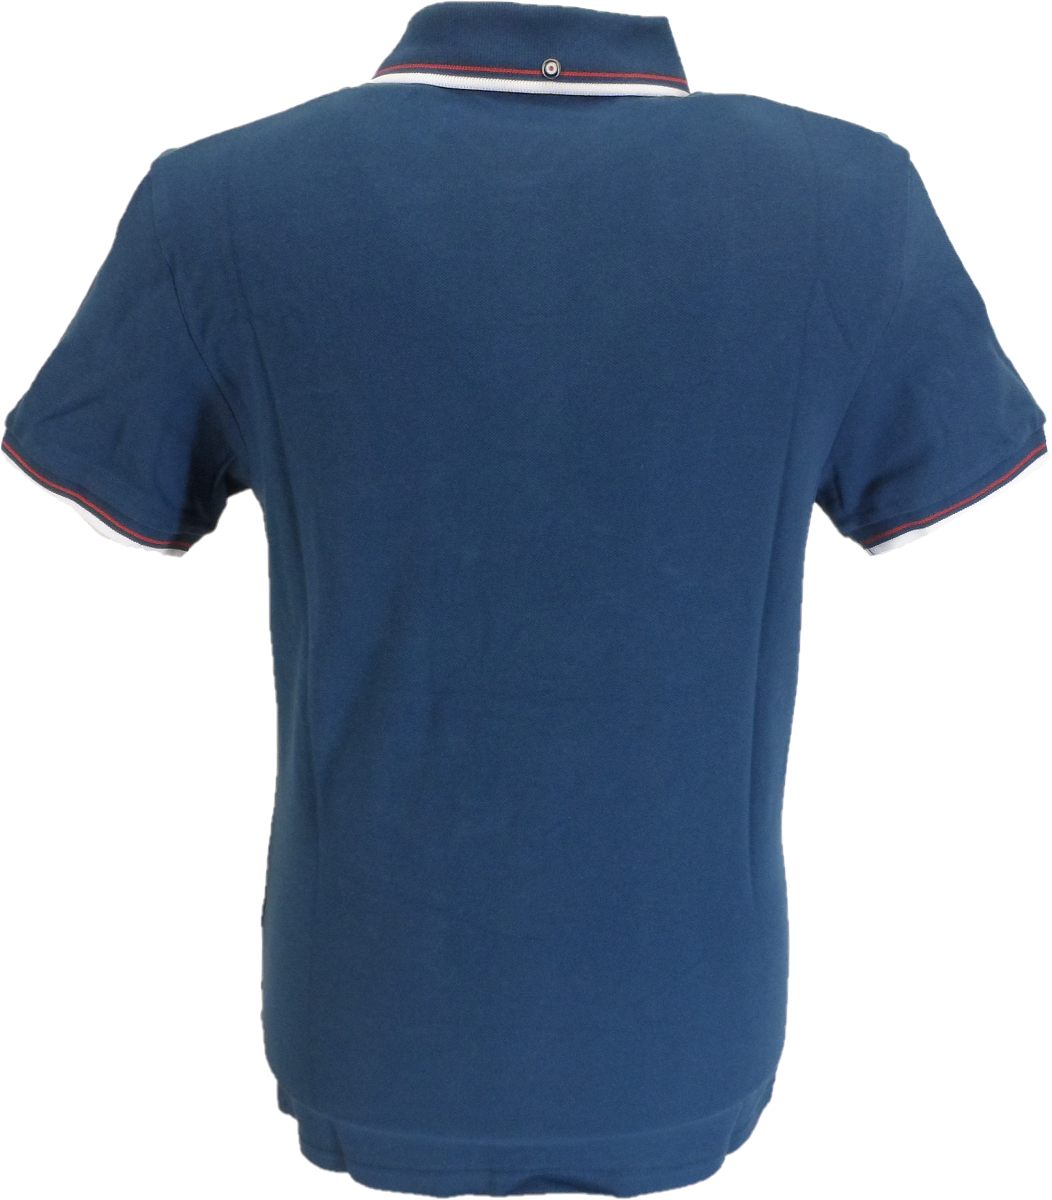 Ben Sherman Herren-Poloshirt aus 100 % Baumwolle in dunklem Blaugrün